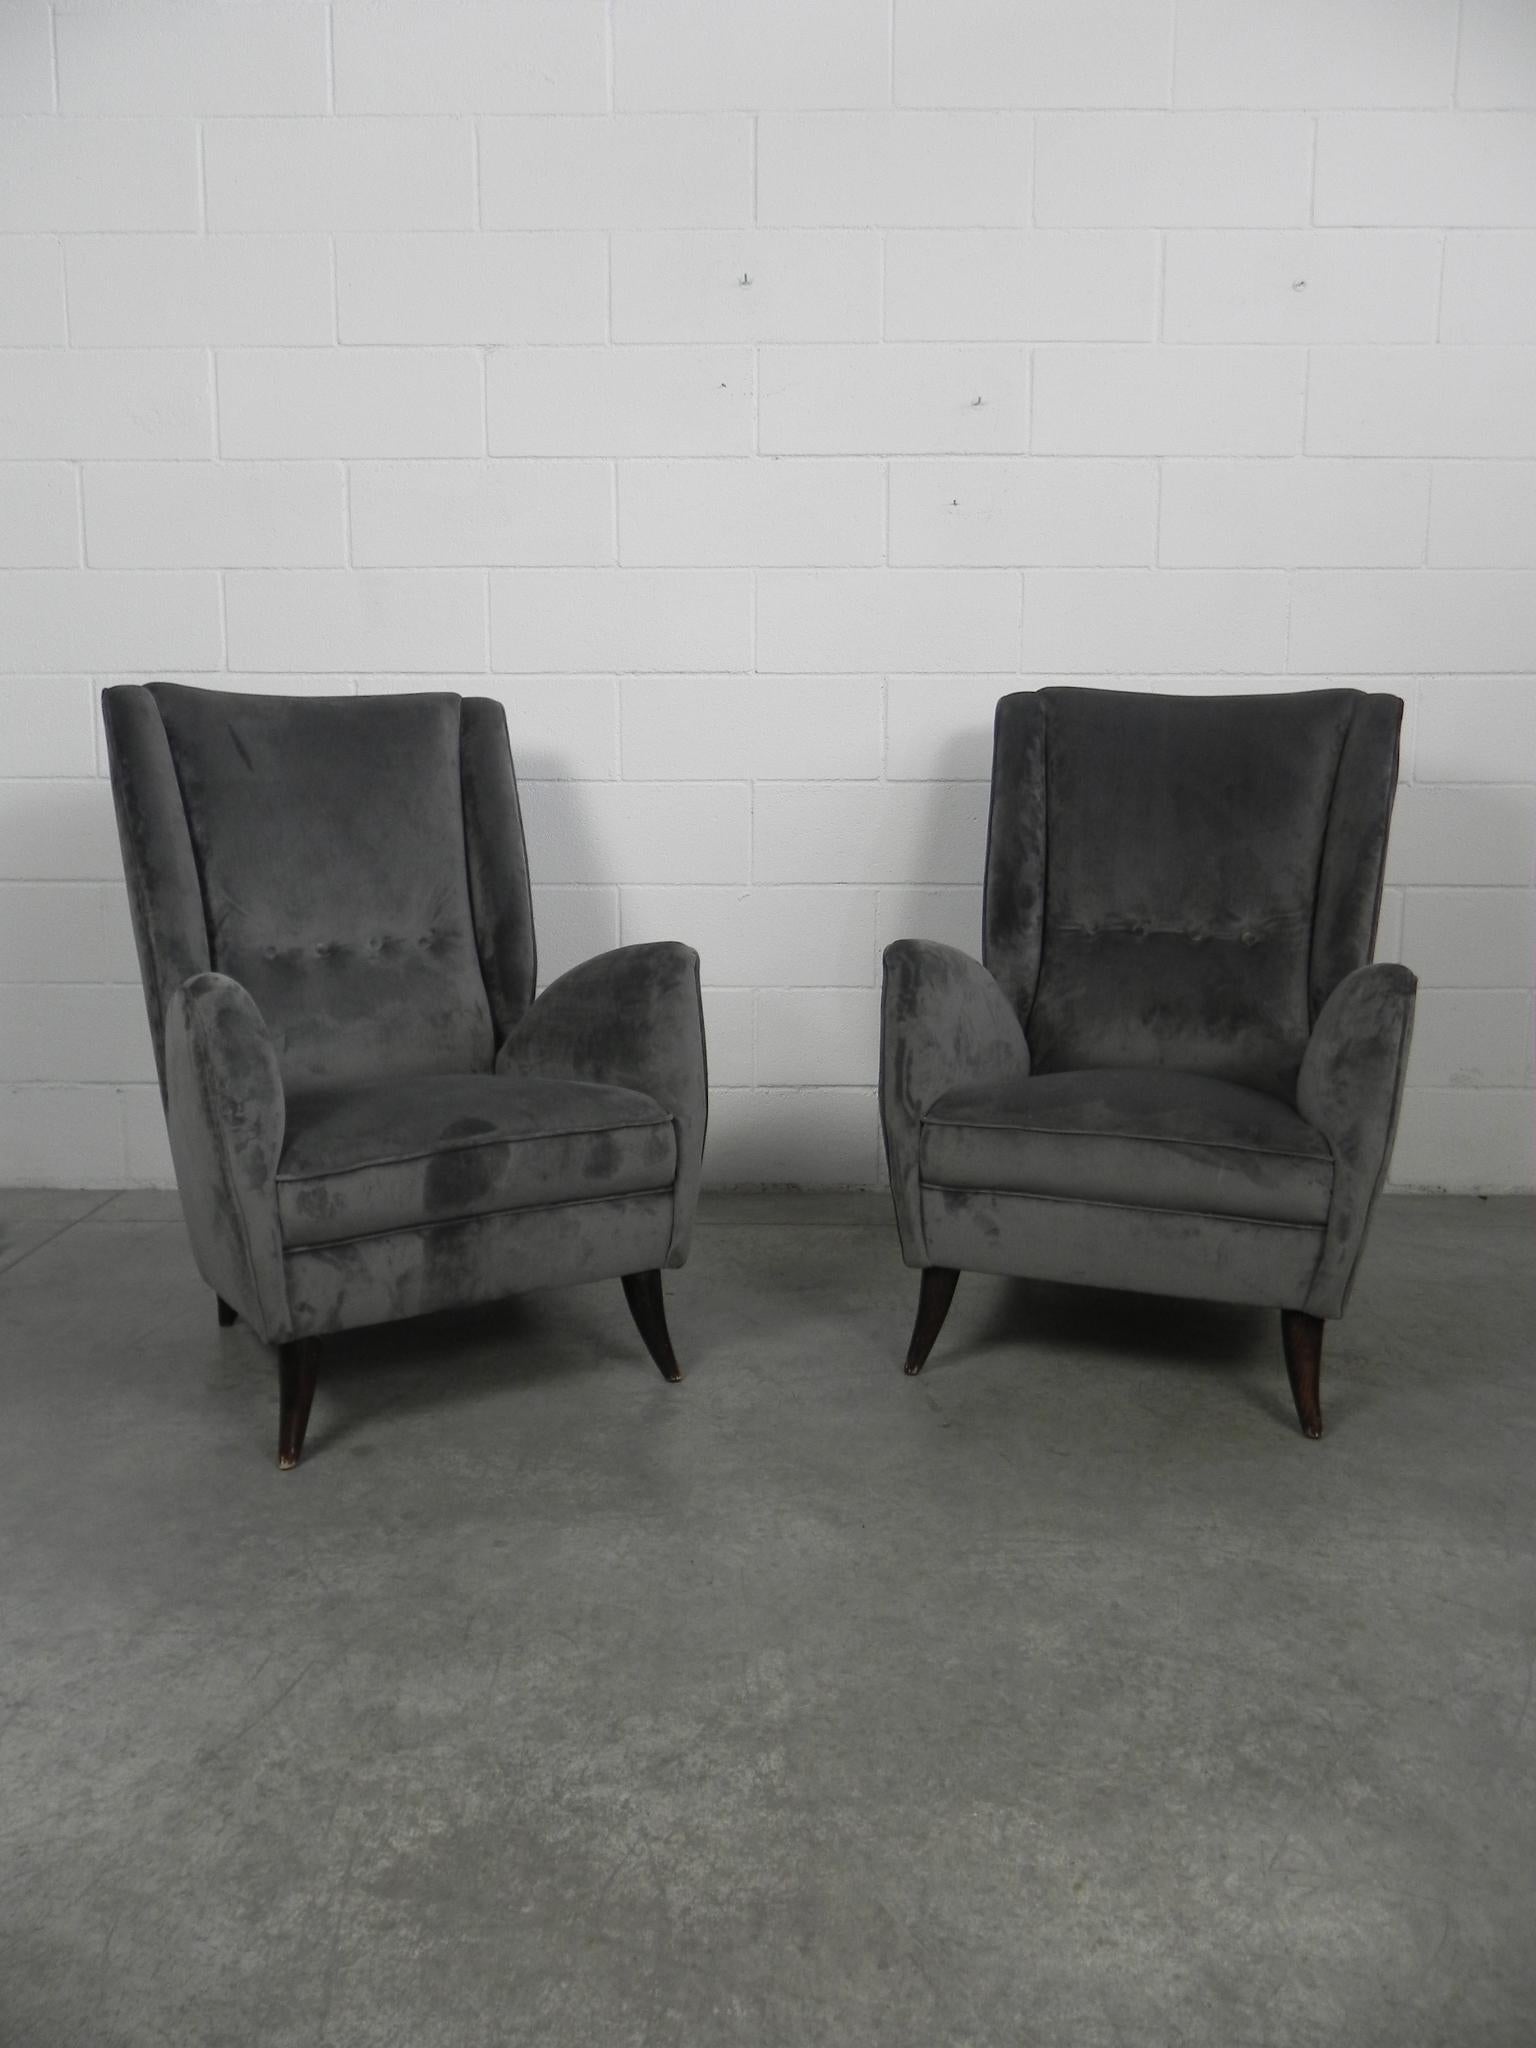 Paar Sessel von Gio Ponti mit Samtpolsterung, Hersteller I.S.A. Bergamo, Italien, 1950er Jahre.